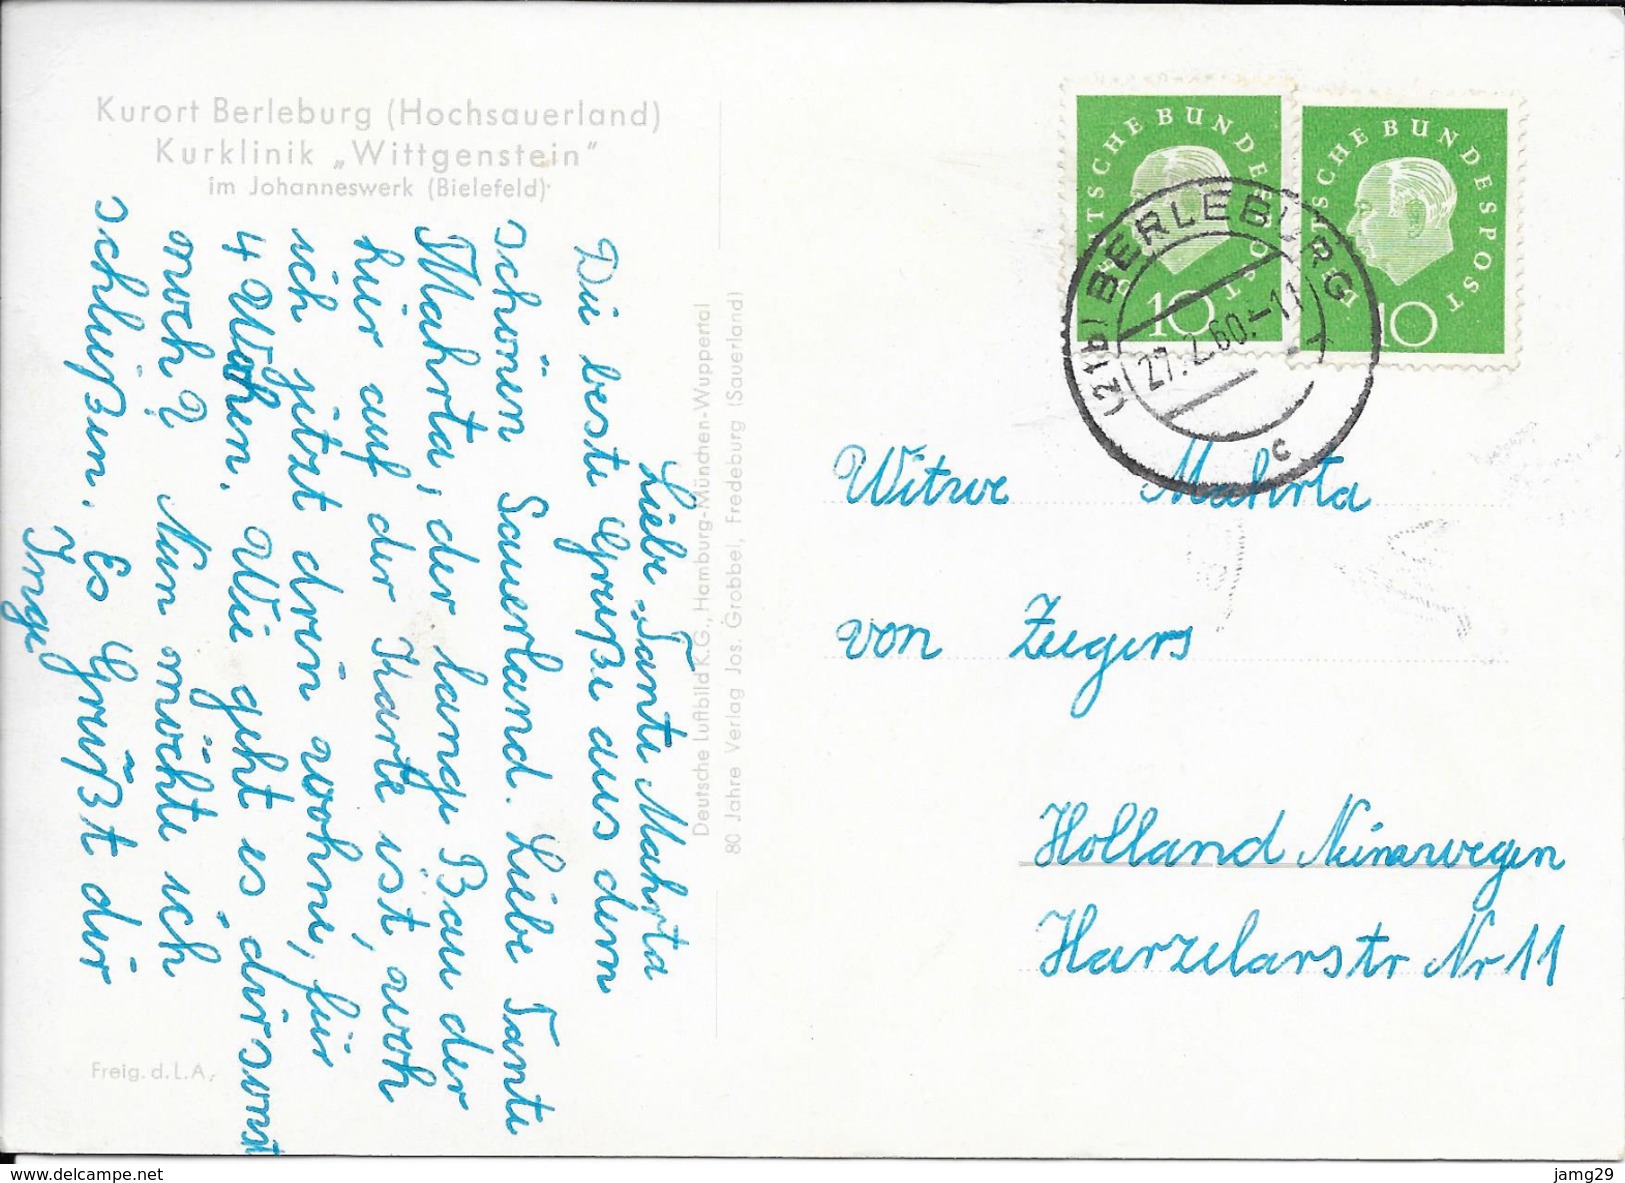 Duitsland/Deutschland, Berleburg, Kurklinik "Wittgenstein", 1960 - Bad Berleburg